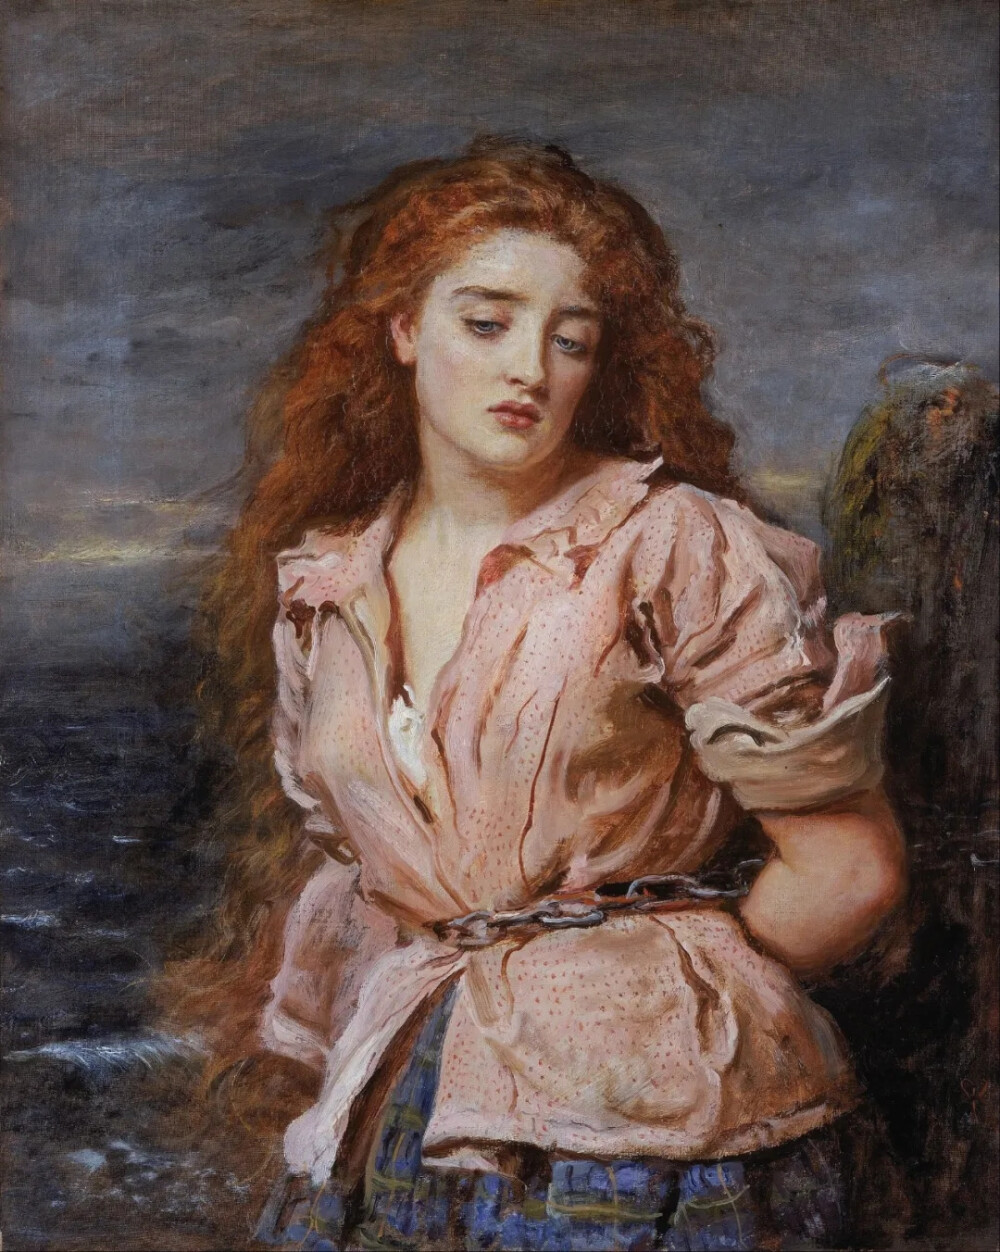 索尔韦的殉难者
约翰·埃弗雷特·米莱
1871年，布面油画
70.5cm x 56.5cm
英国利物浦国家博物馆，沃克美术馆
